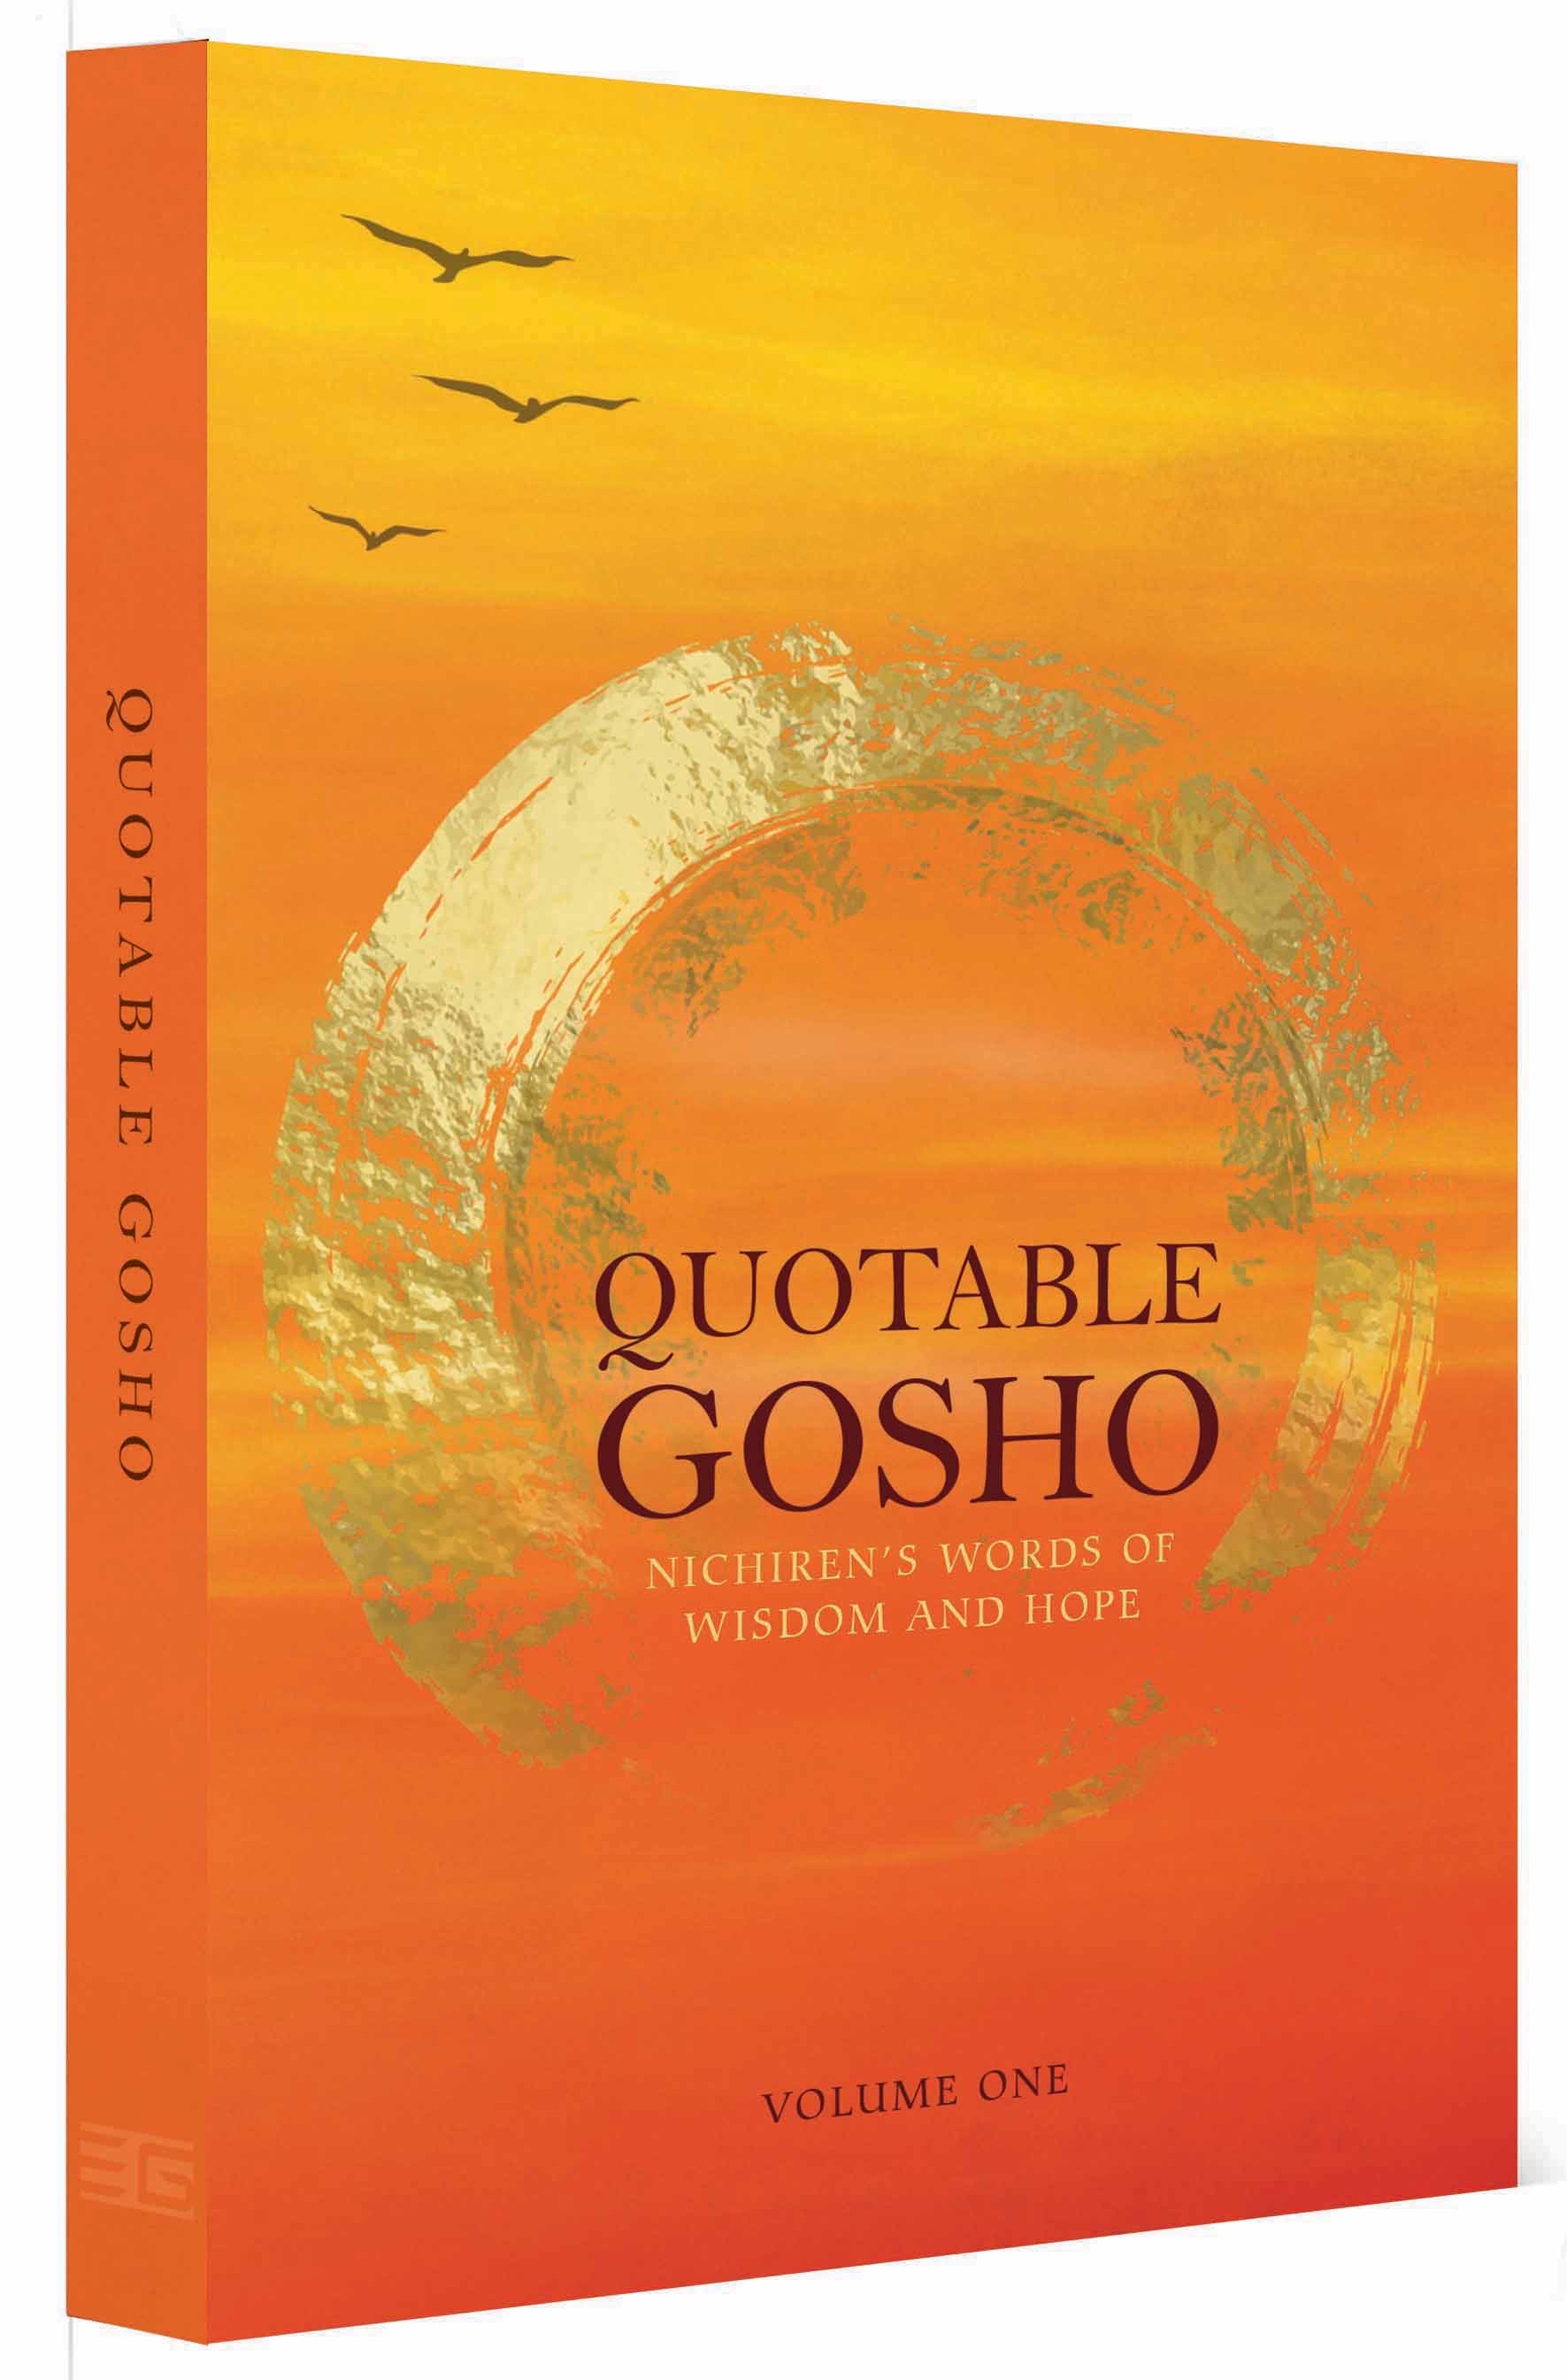 The Quotable Gosho